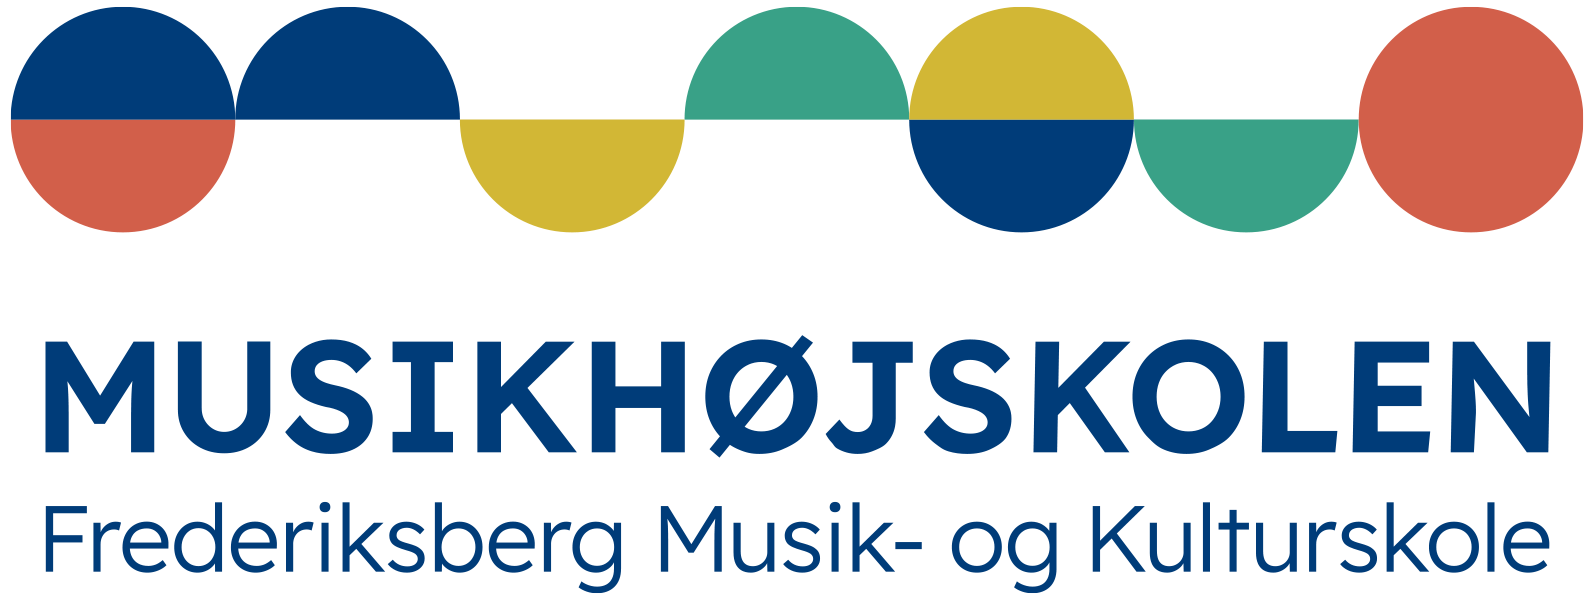 Musikhøjskolen Frederiksberg Musik- og Kulturskole Logo